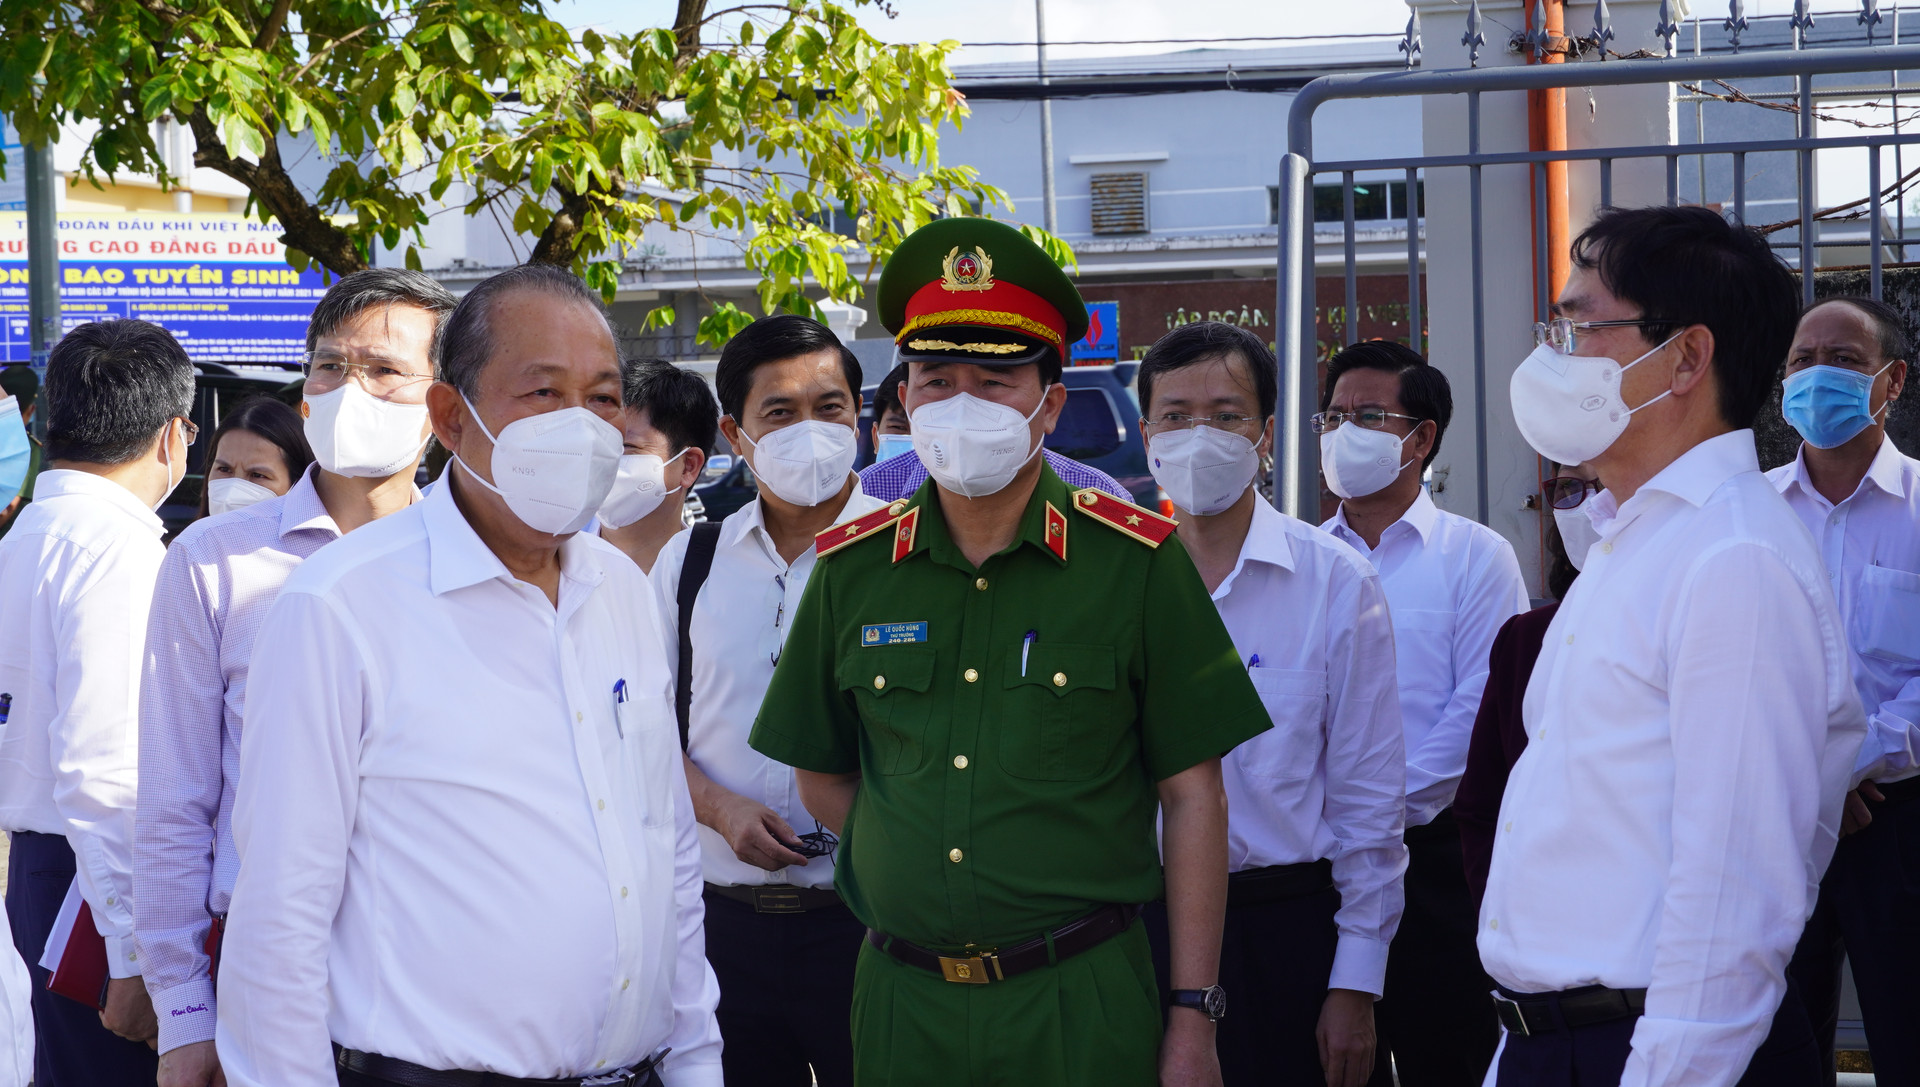 Phó Thủ tướng Thường trực Trương Hòa Bình kiểm tra công tác phòng chống dịch tại Bà Rịa - Vũng Tàu.